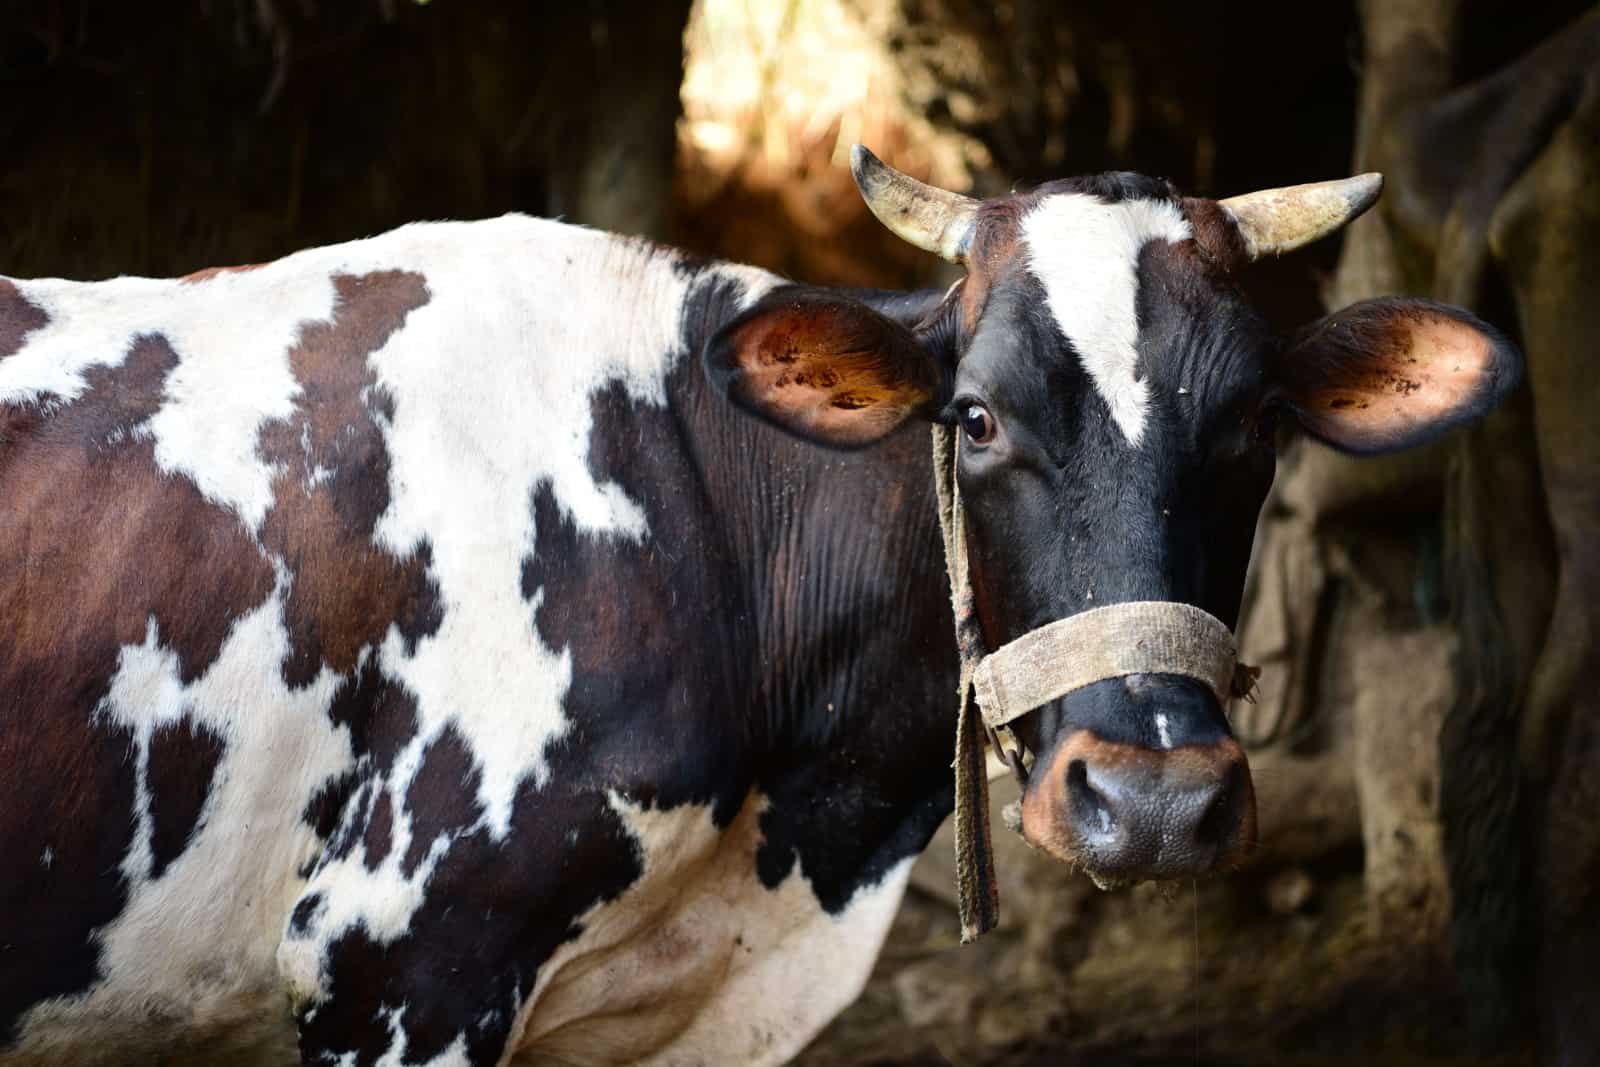 Farm cow in the barn